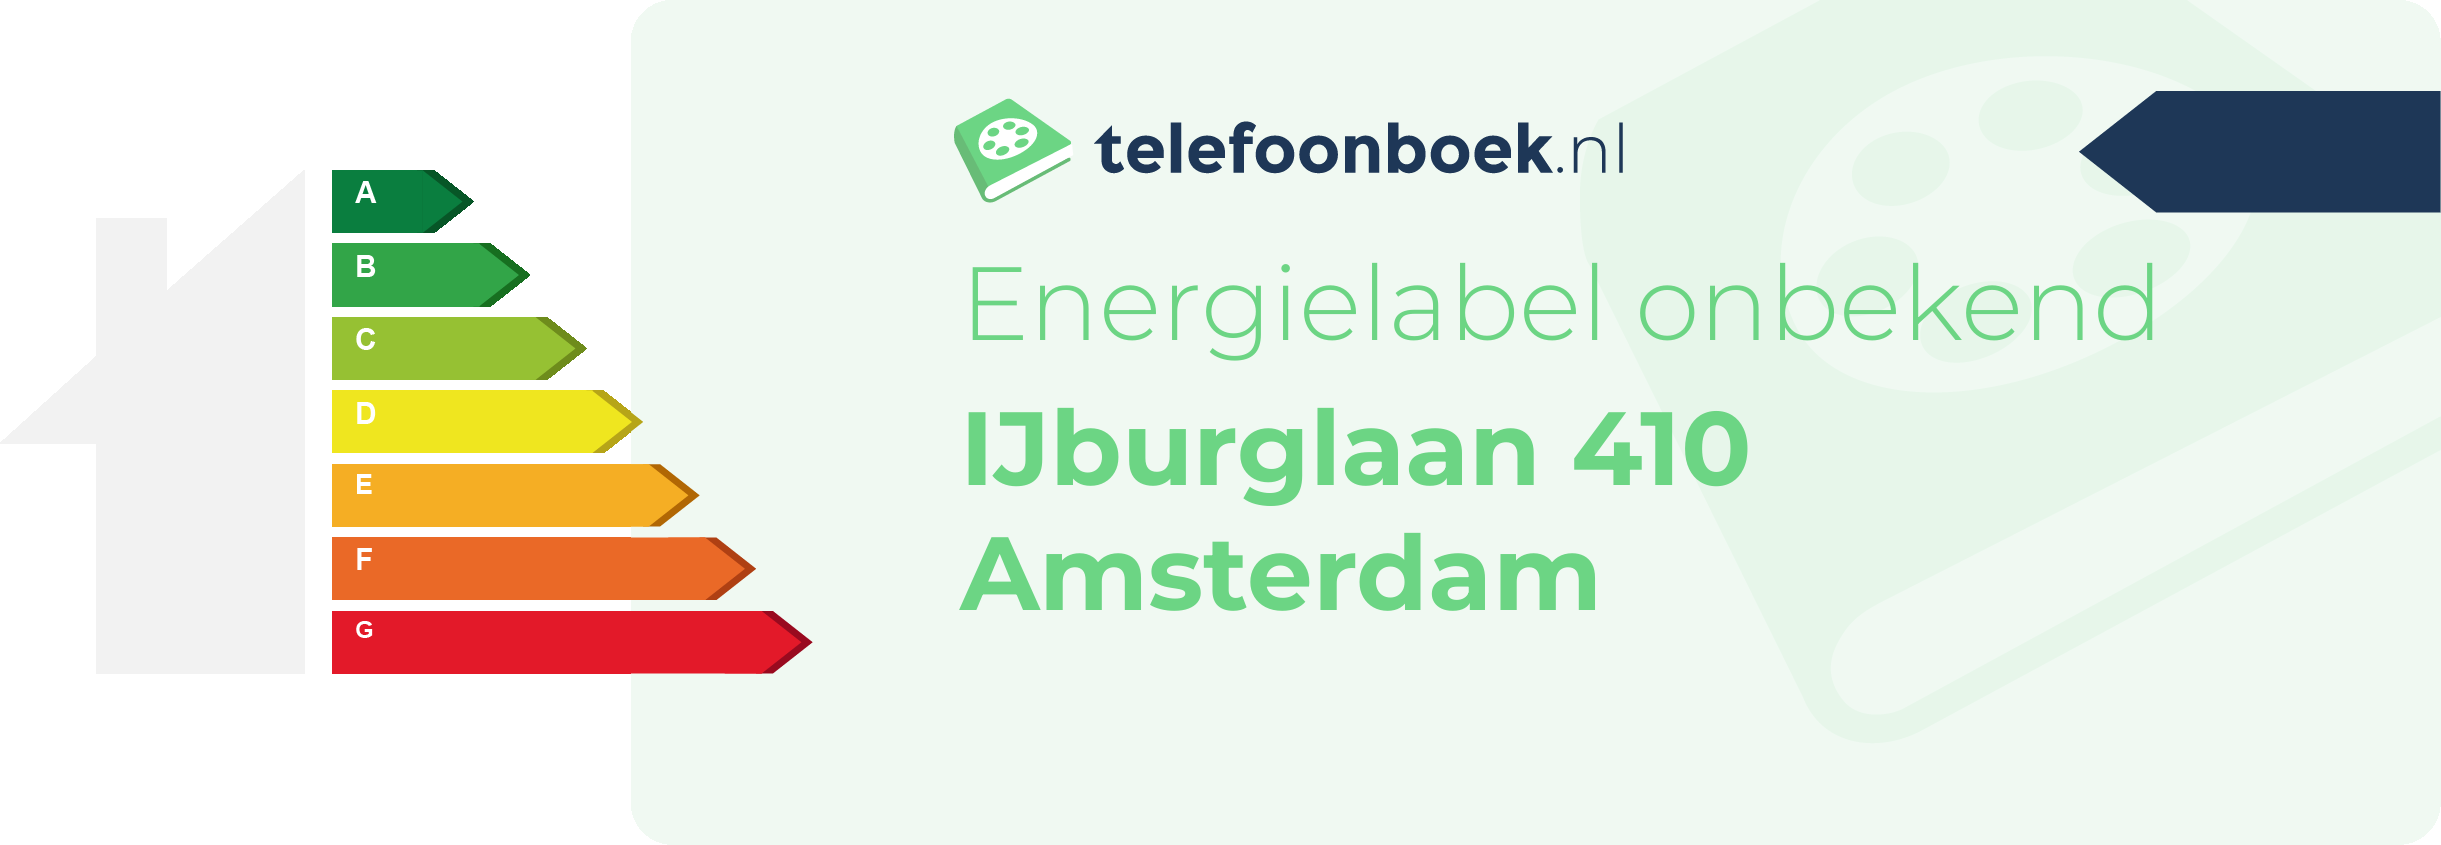 Energielabel IJburglaan 410 Amsterdam